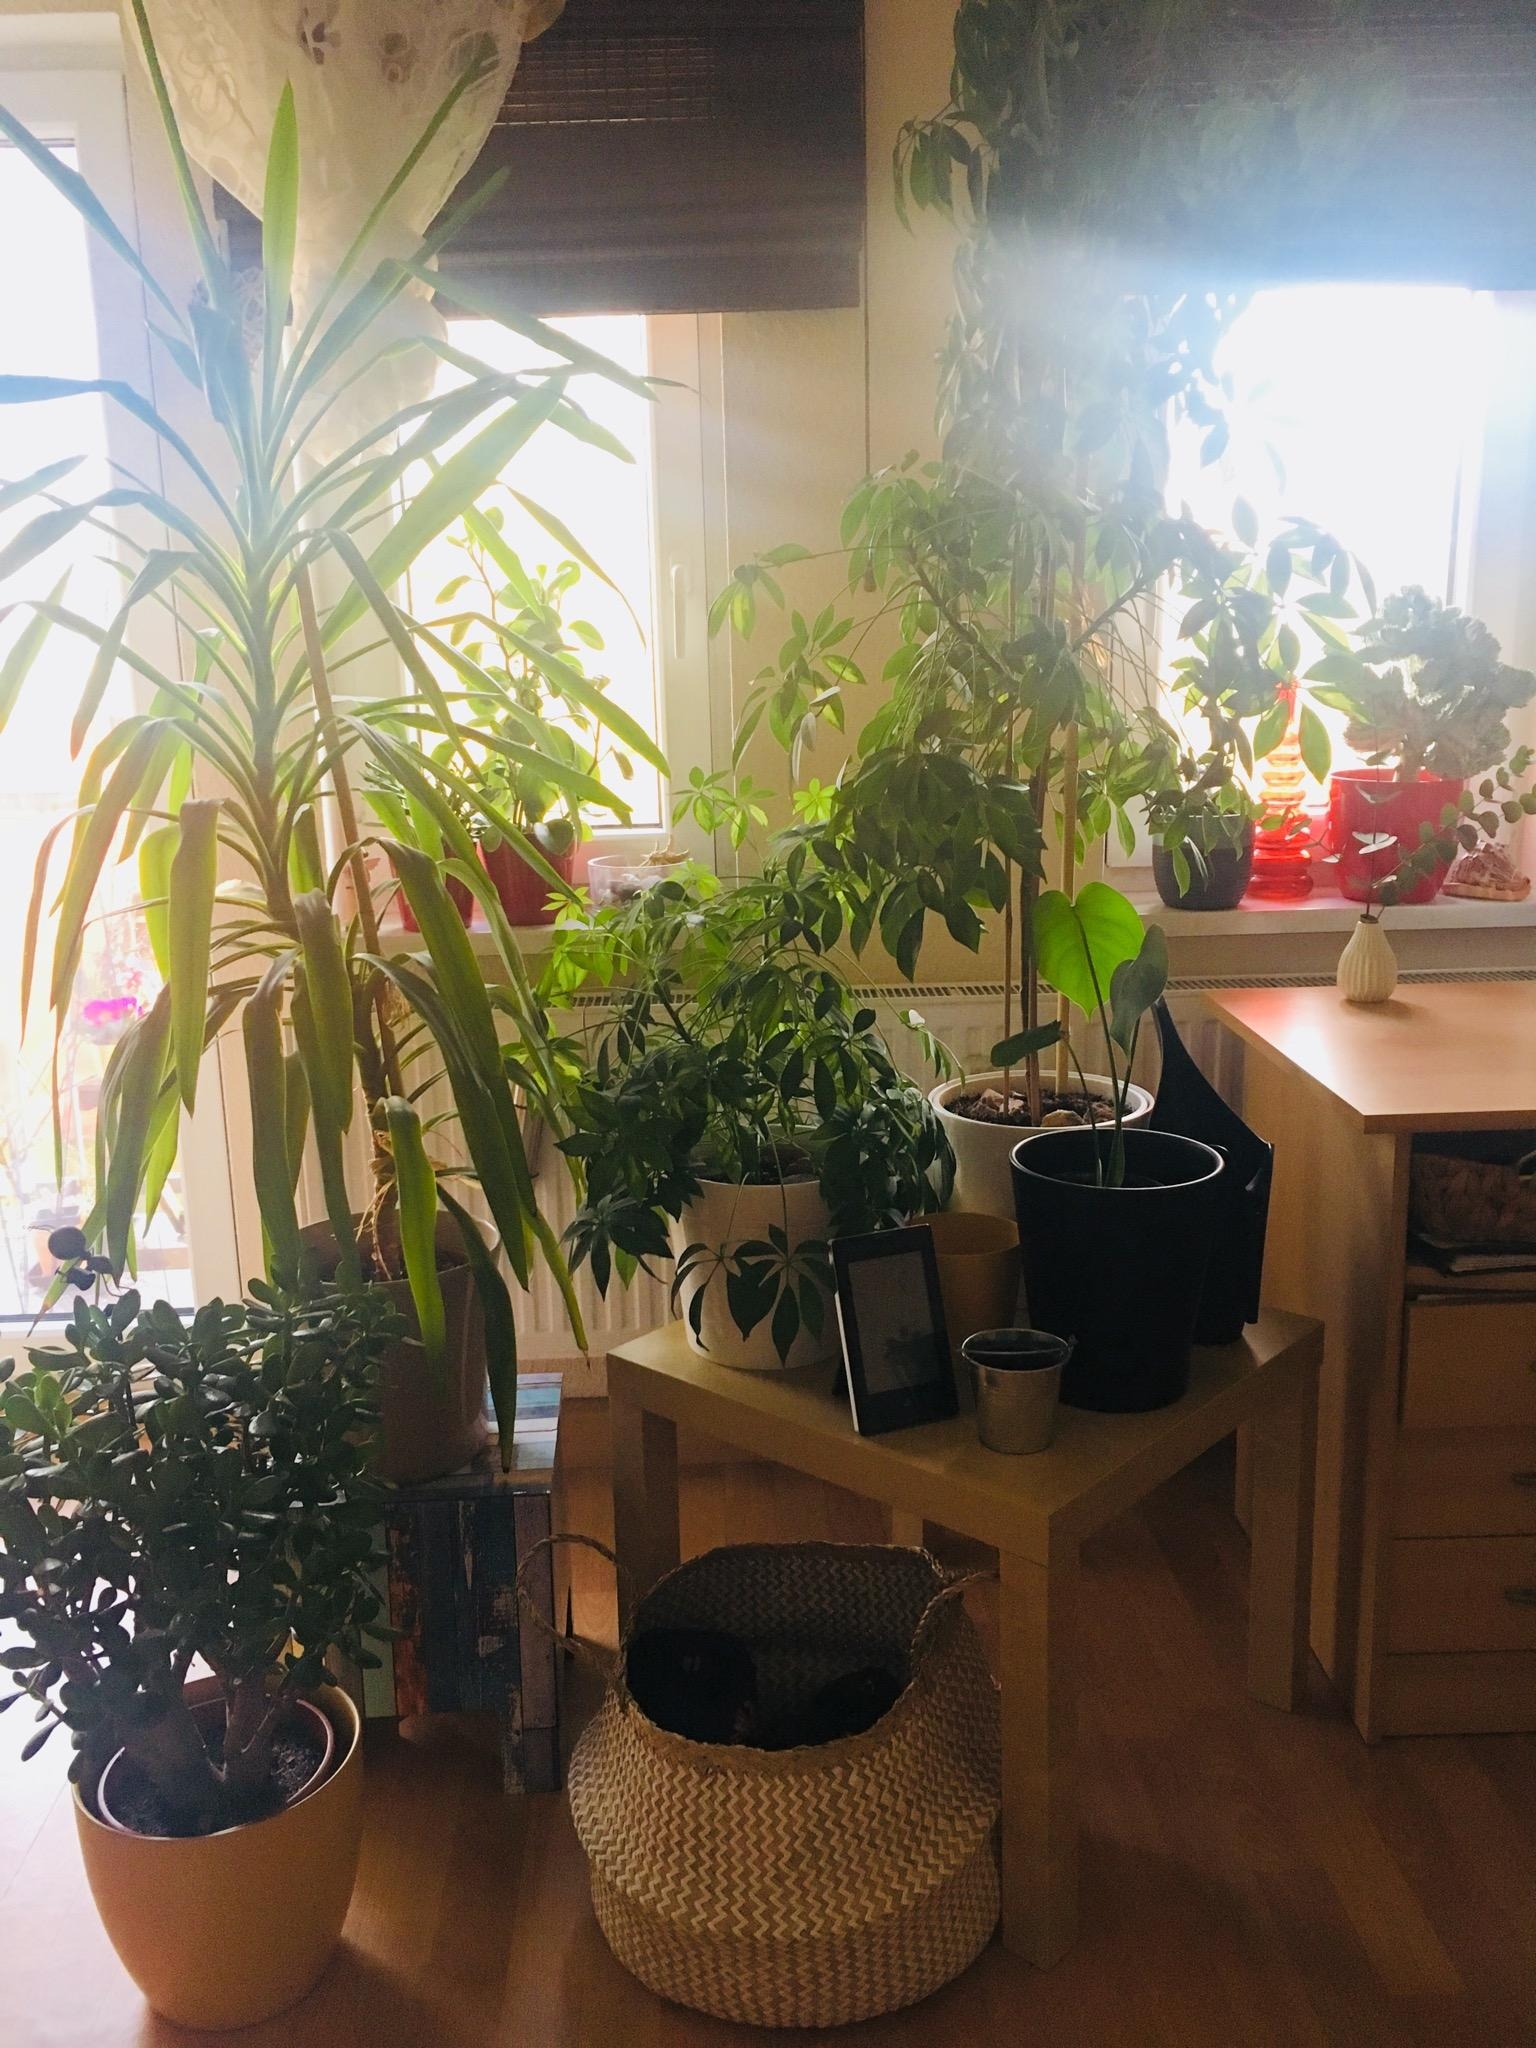 Dschungel in der Wohnung #plantlover #livingchallenge 